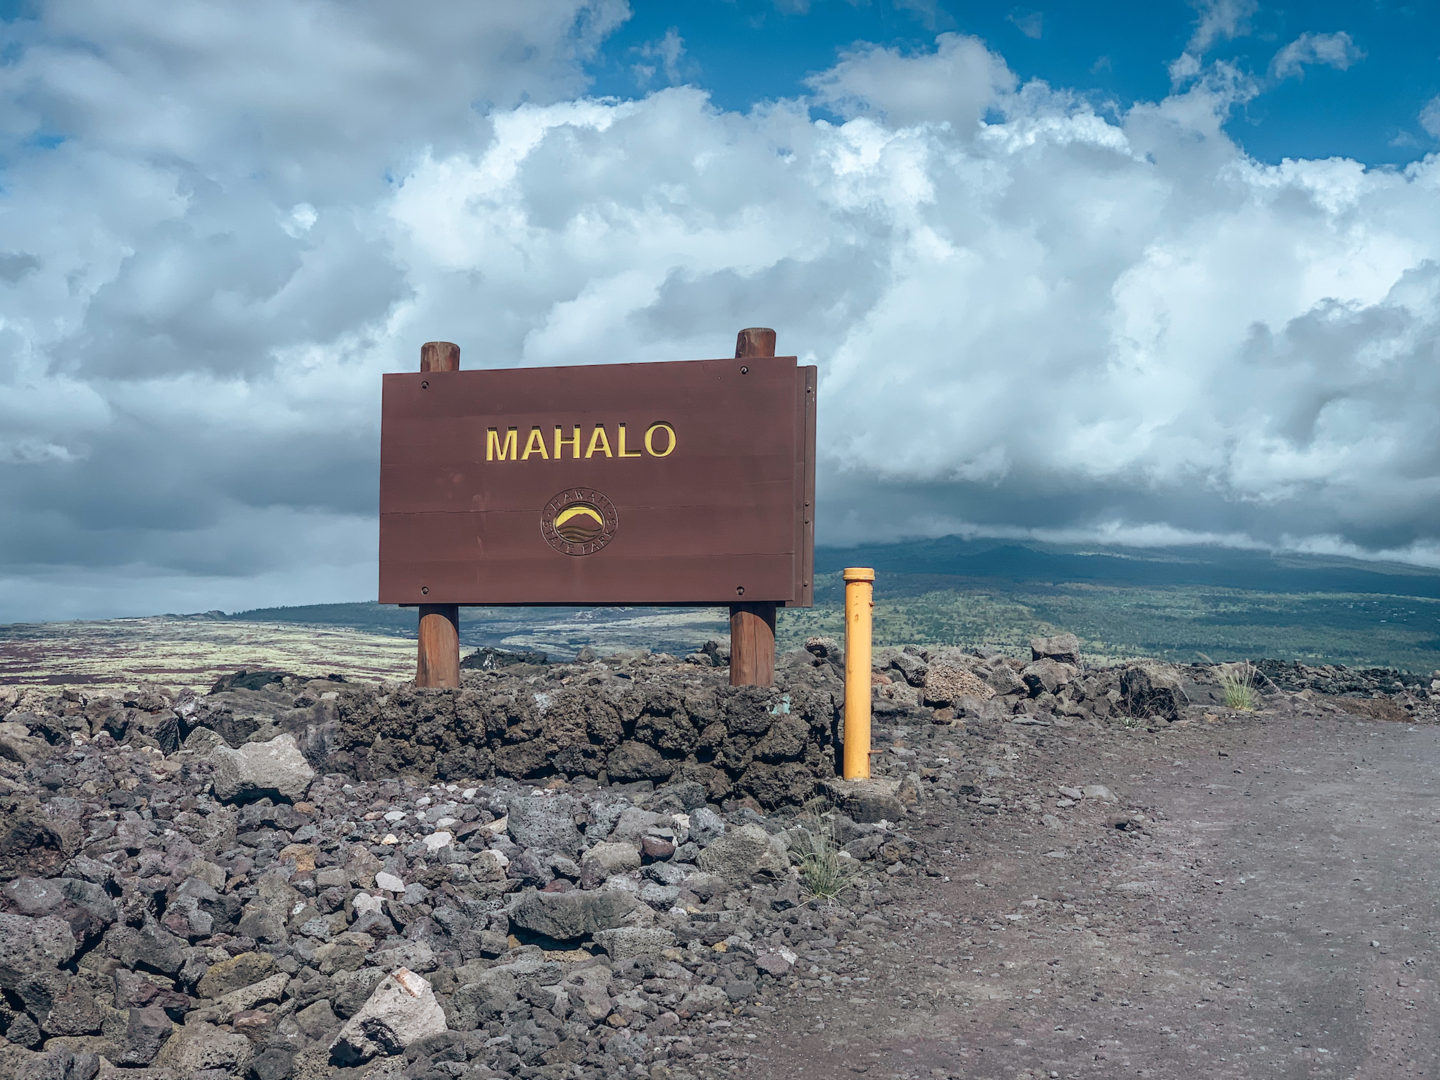 Mahalo sign at Ka'elehuluhulu Beach - Kailua-Kona, Hawaii Island